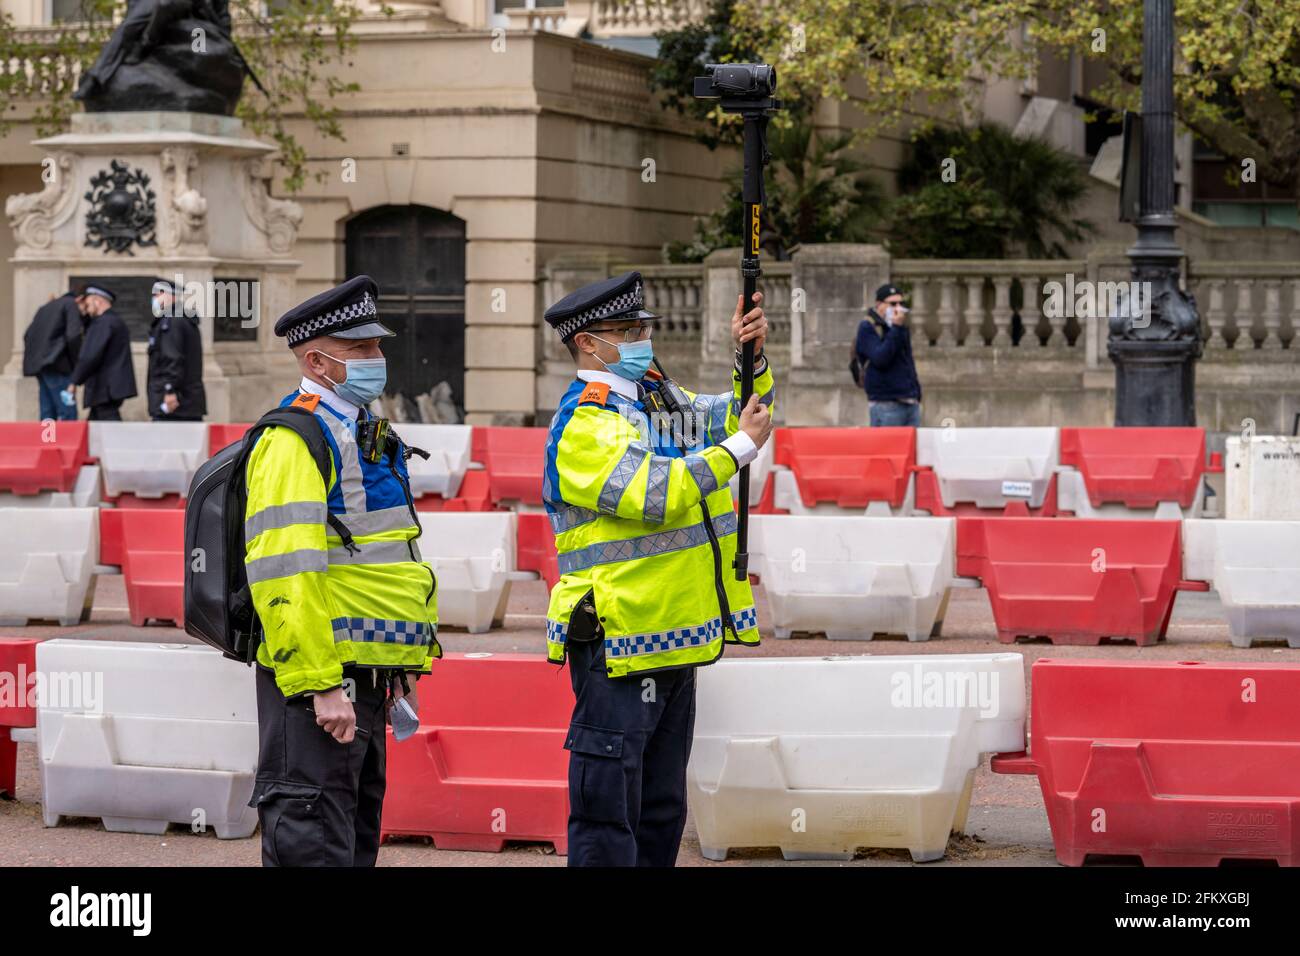 LONDRES, Royaume-Uni – 1er mai 2021 : les officiers de police métropolitaine en uniforme utilisent une caméra vidéo attachée à un poteau filmant des photos de manifestations en direct Banque D'Images